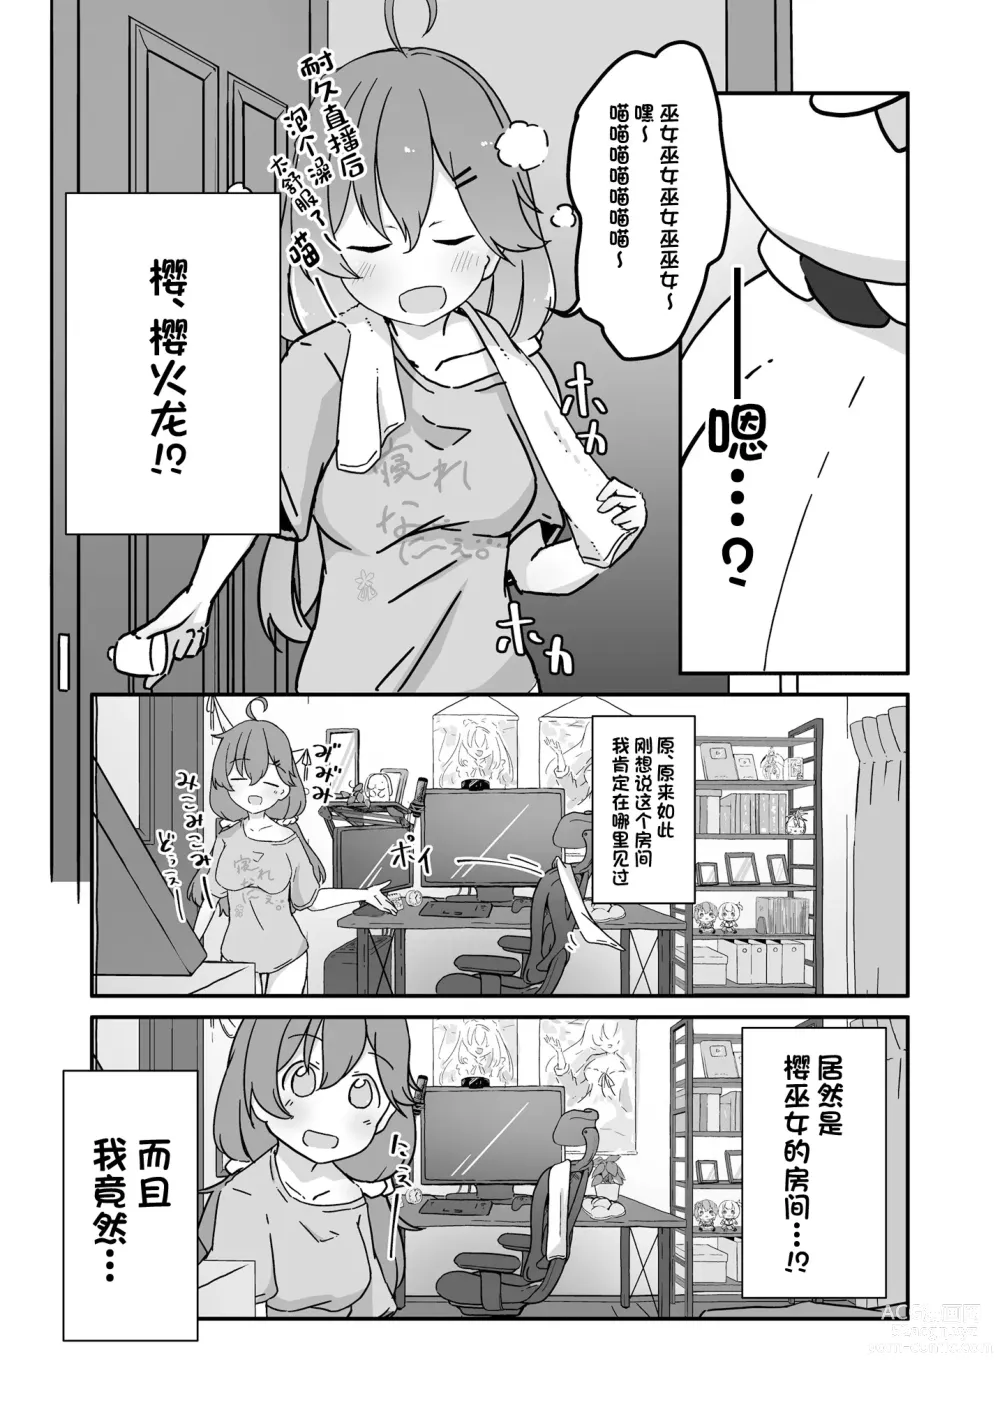 Page 7 of doujinshi Kizuitara 35P ni Natteita!?